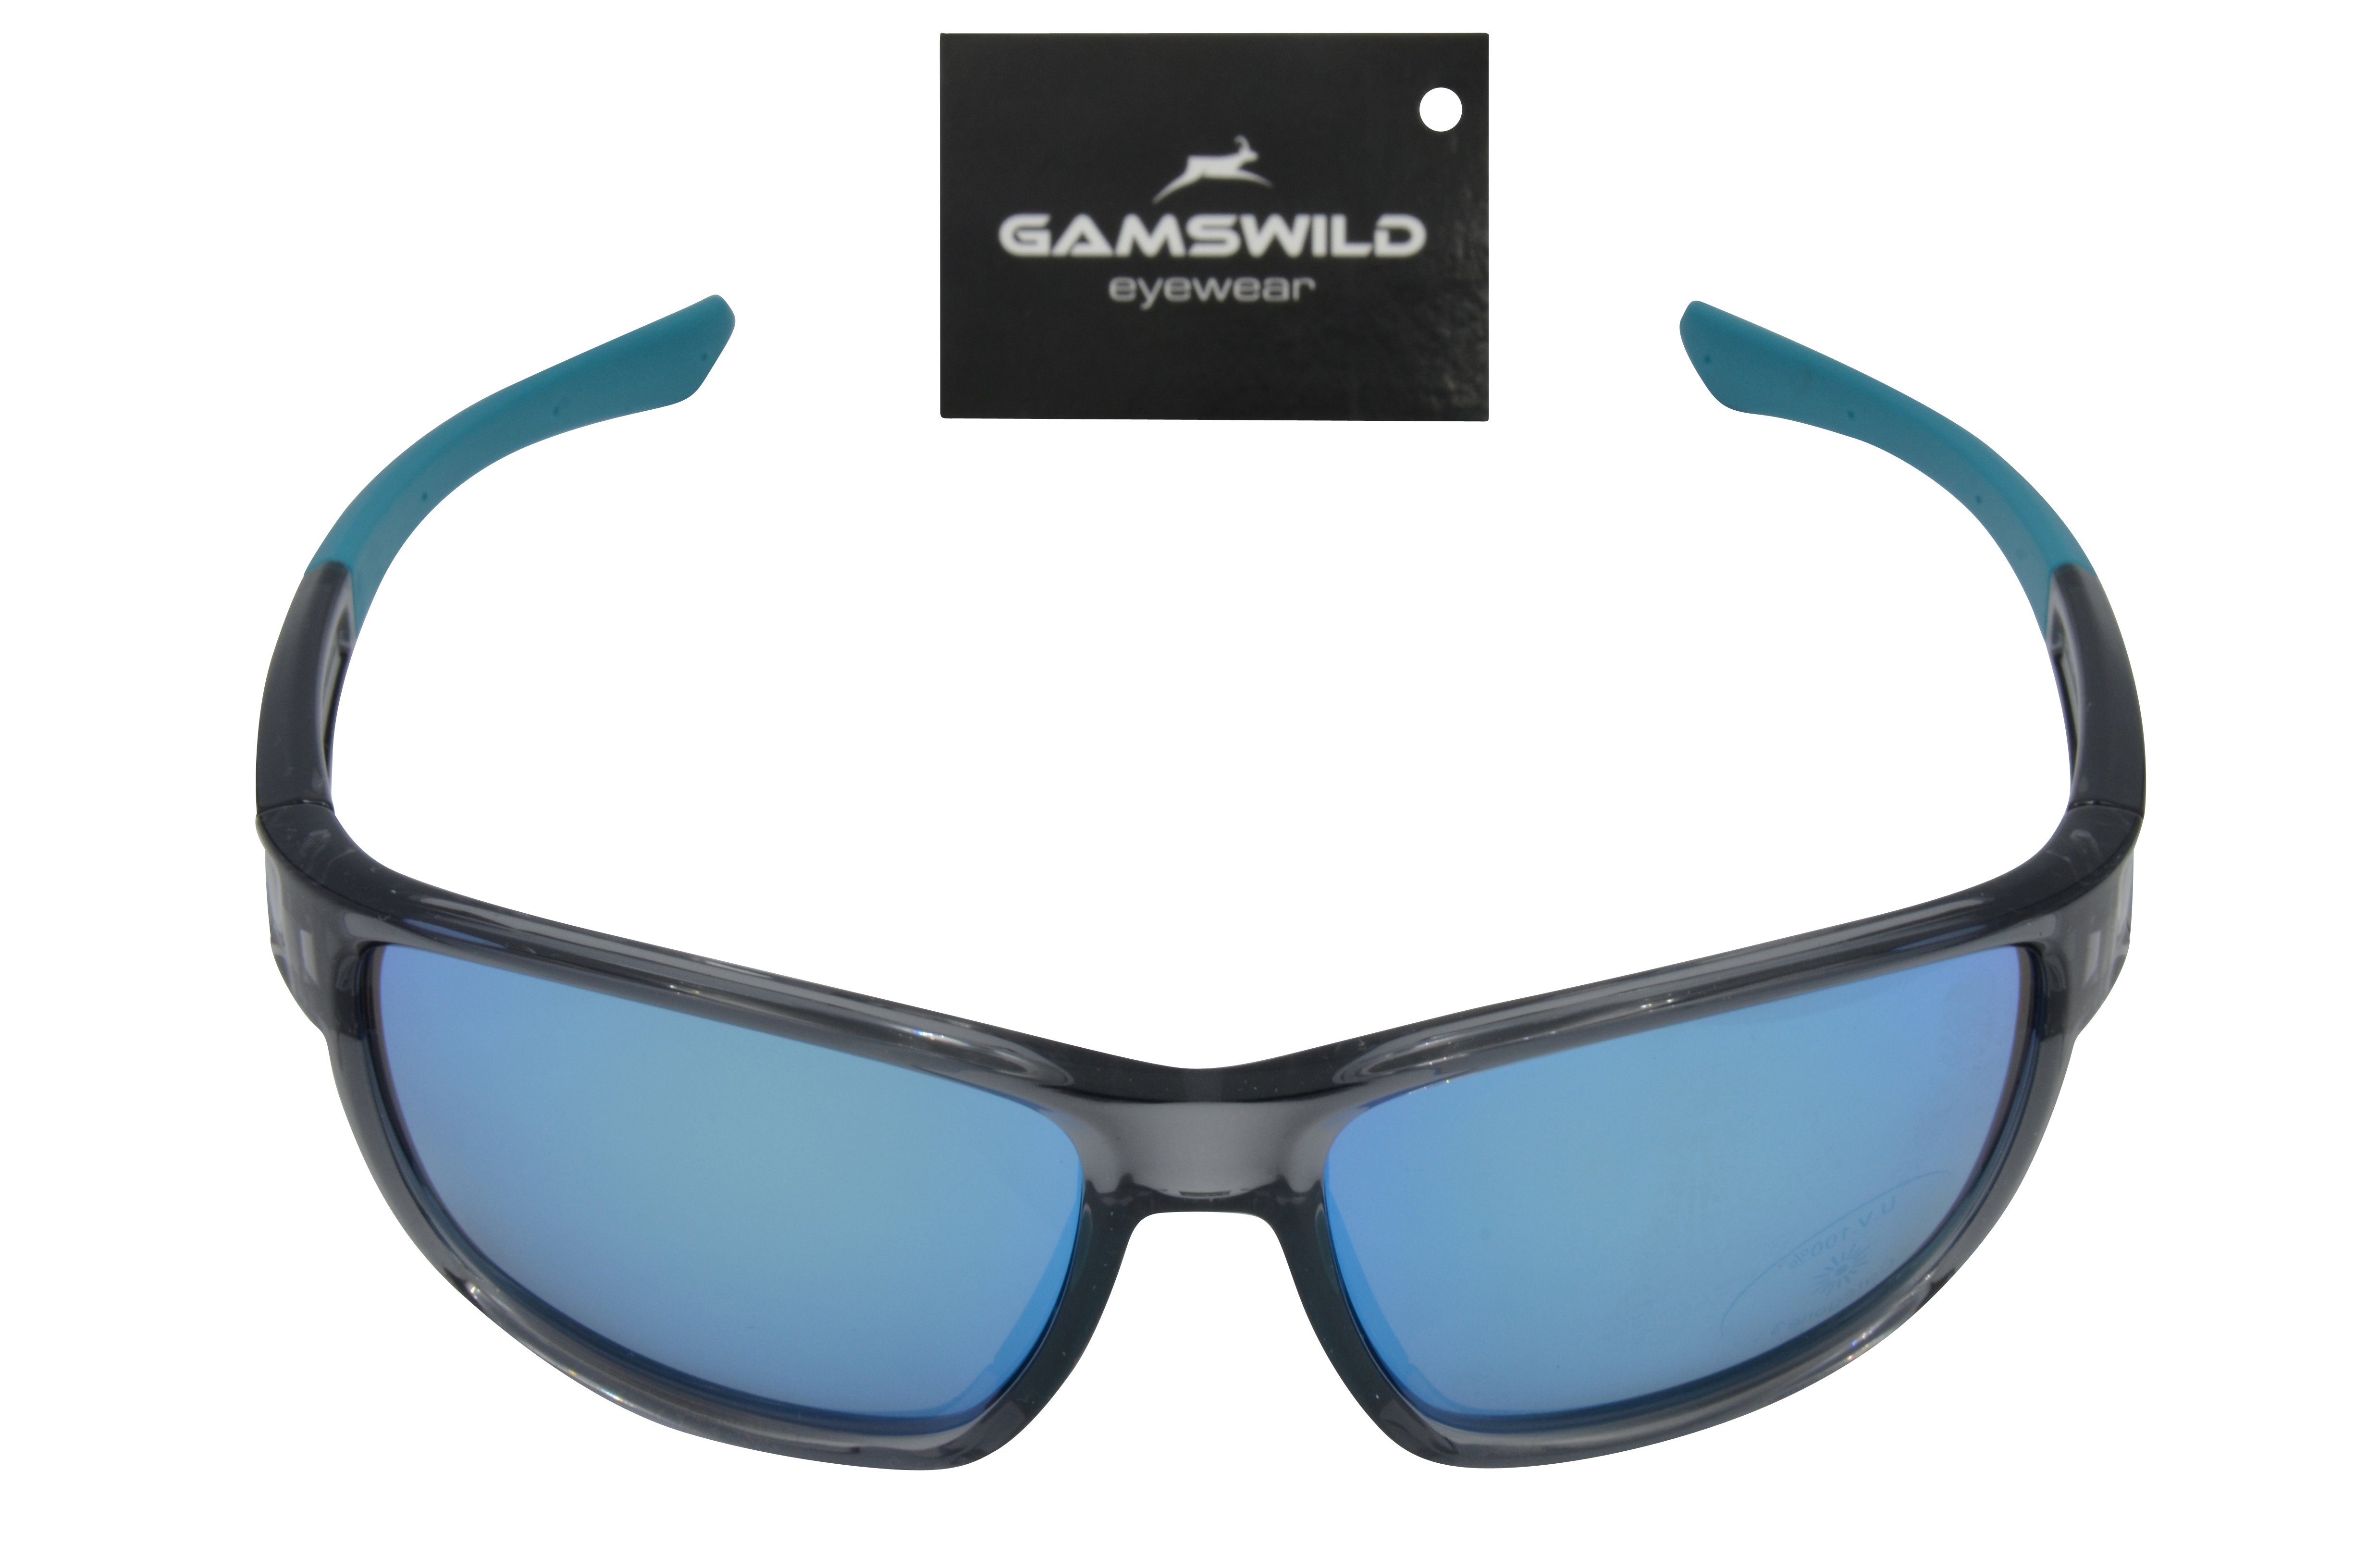 Gamswild Sportbrille WS7532 Sonnenbrille Skibrille Fahrradbrille Damen  Herren Unisex TR90, grau-blau, schwarz-violett, schwarz-gold, schmal  geschnittene Passform